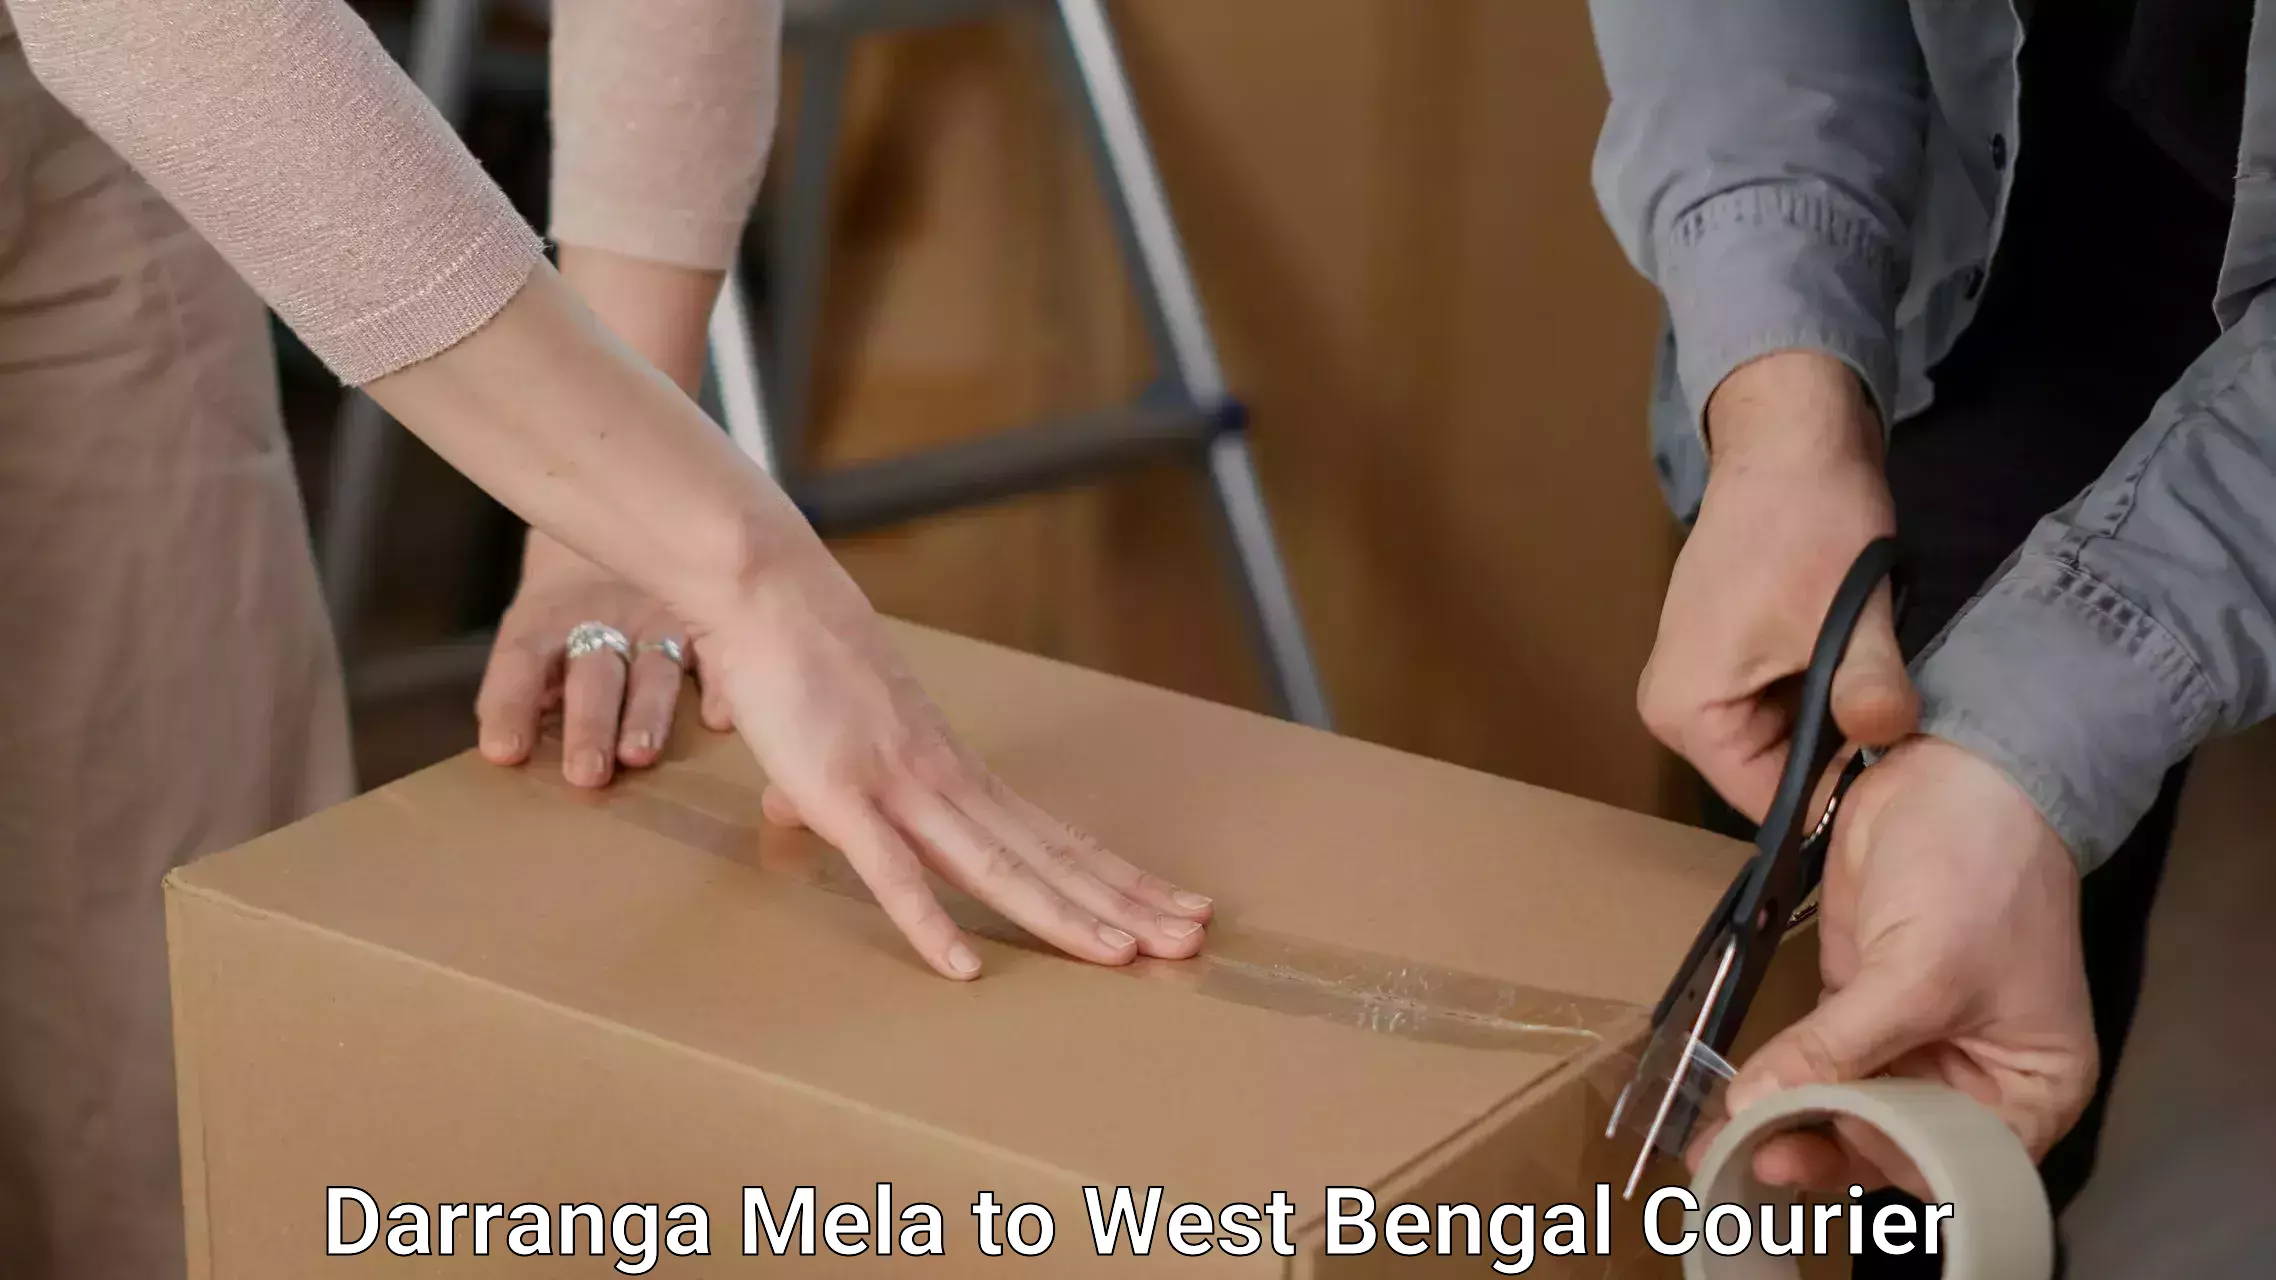 Efficient packing and moving Darranga Mela to Tamluk